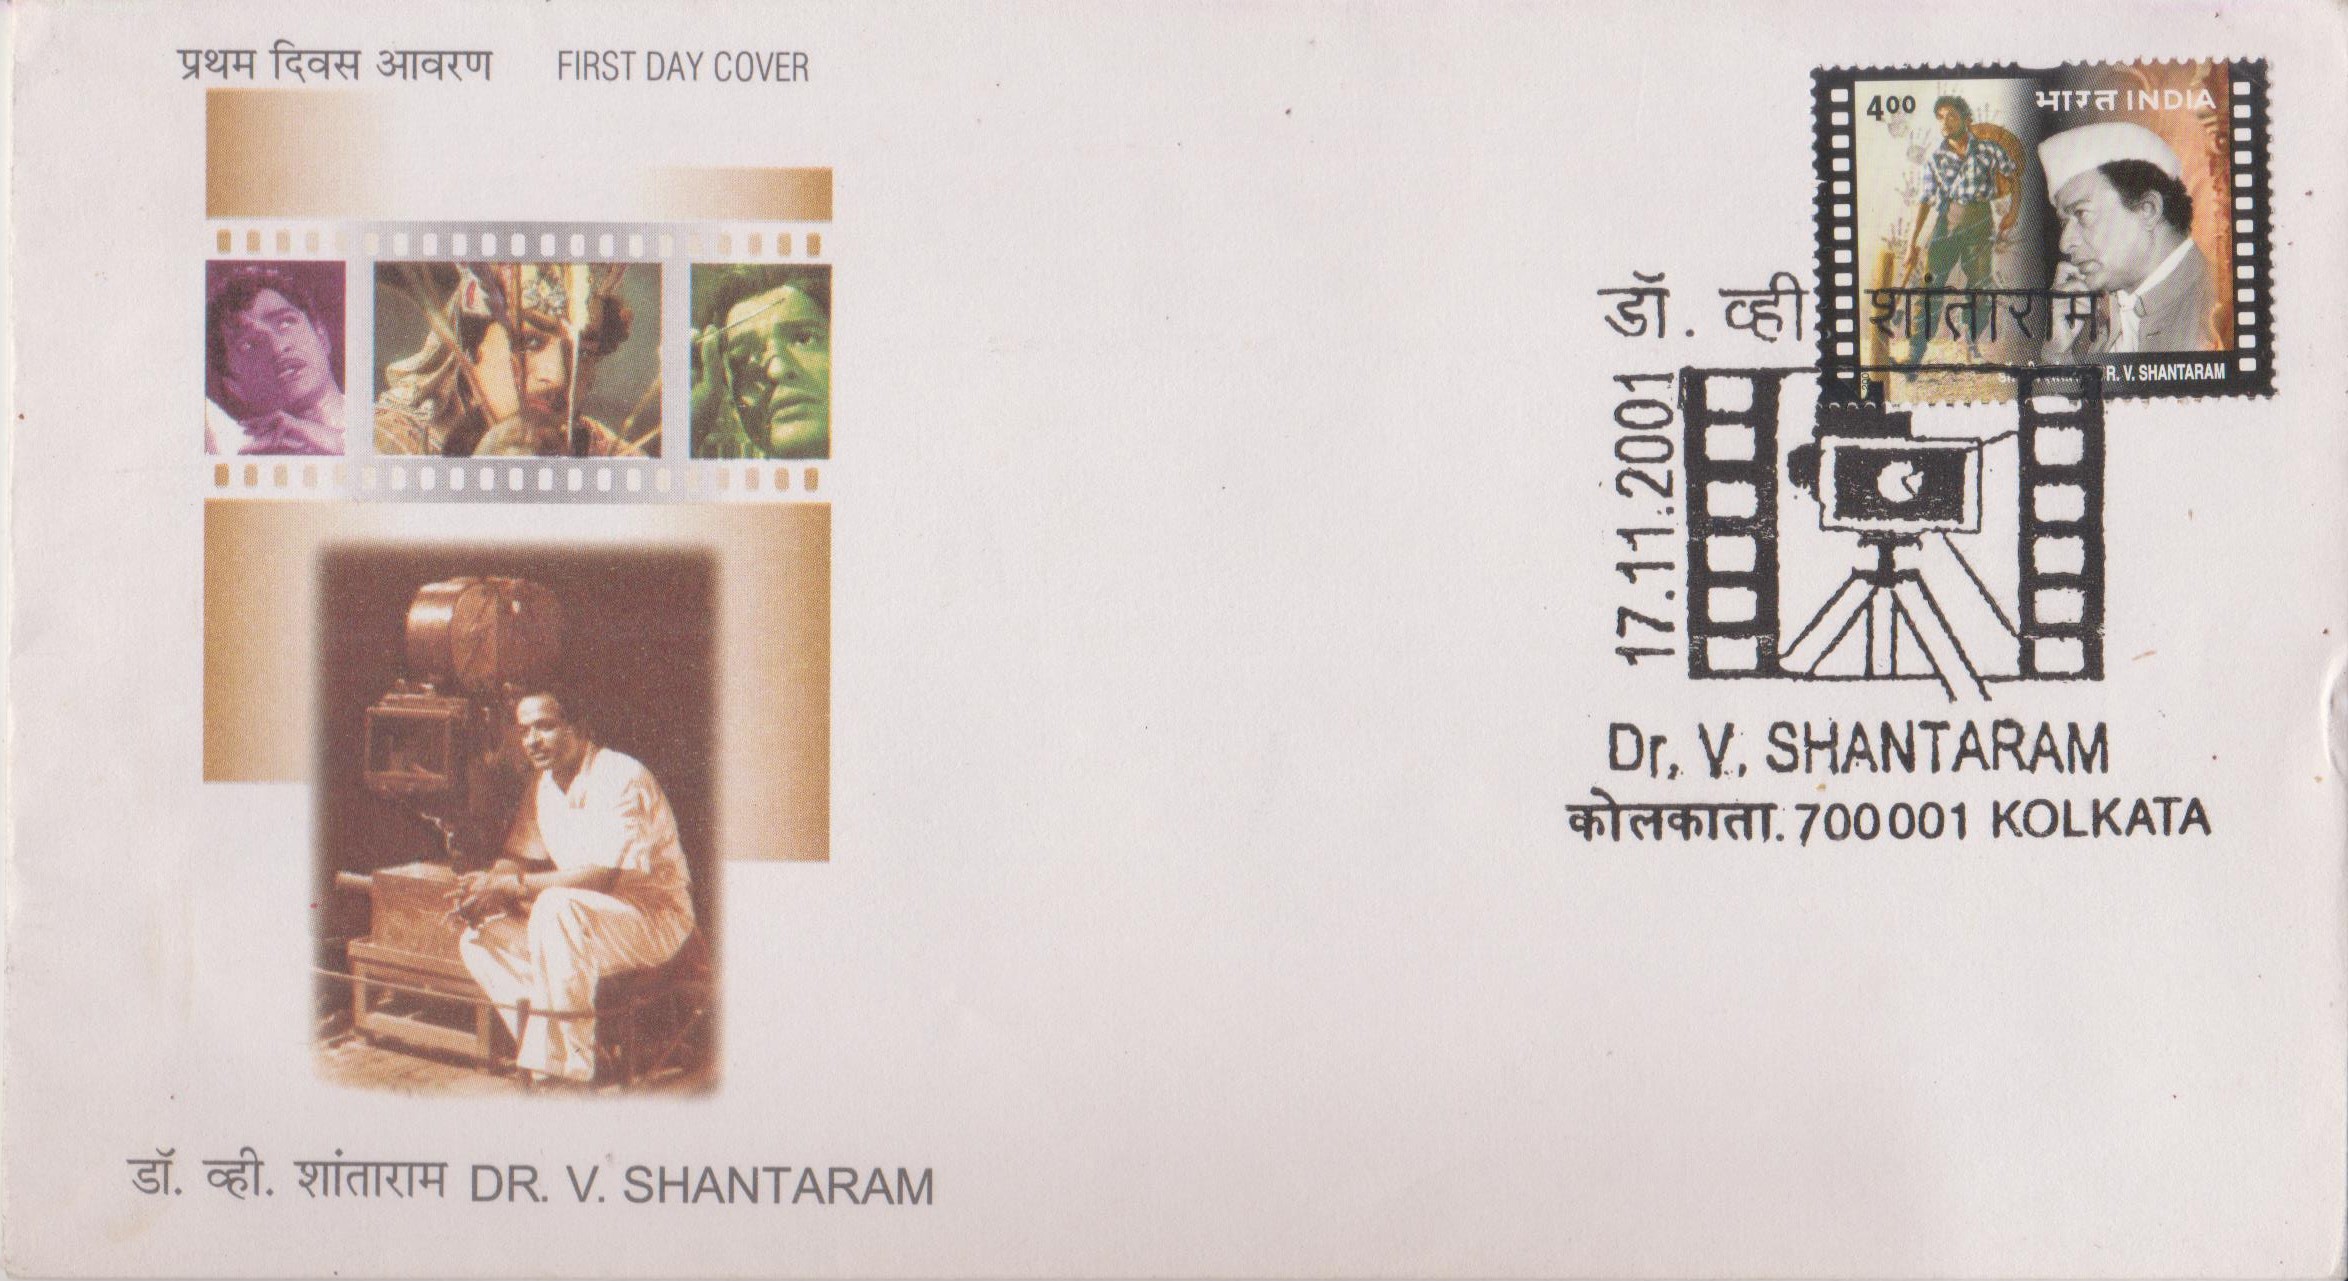 Shantaram Bapu : Marathi cinema